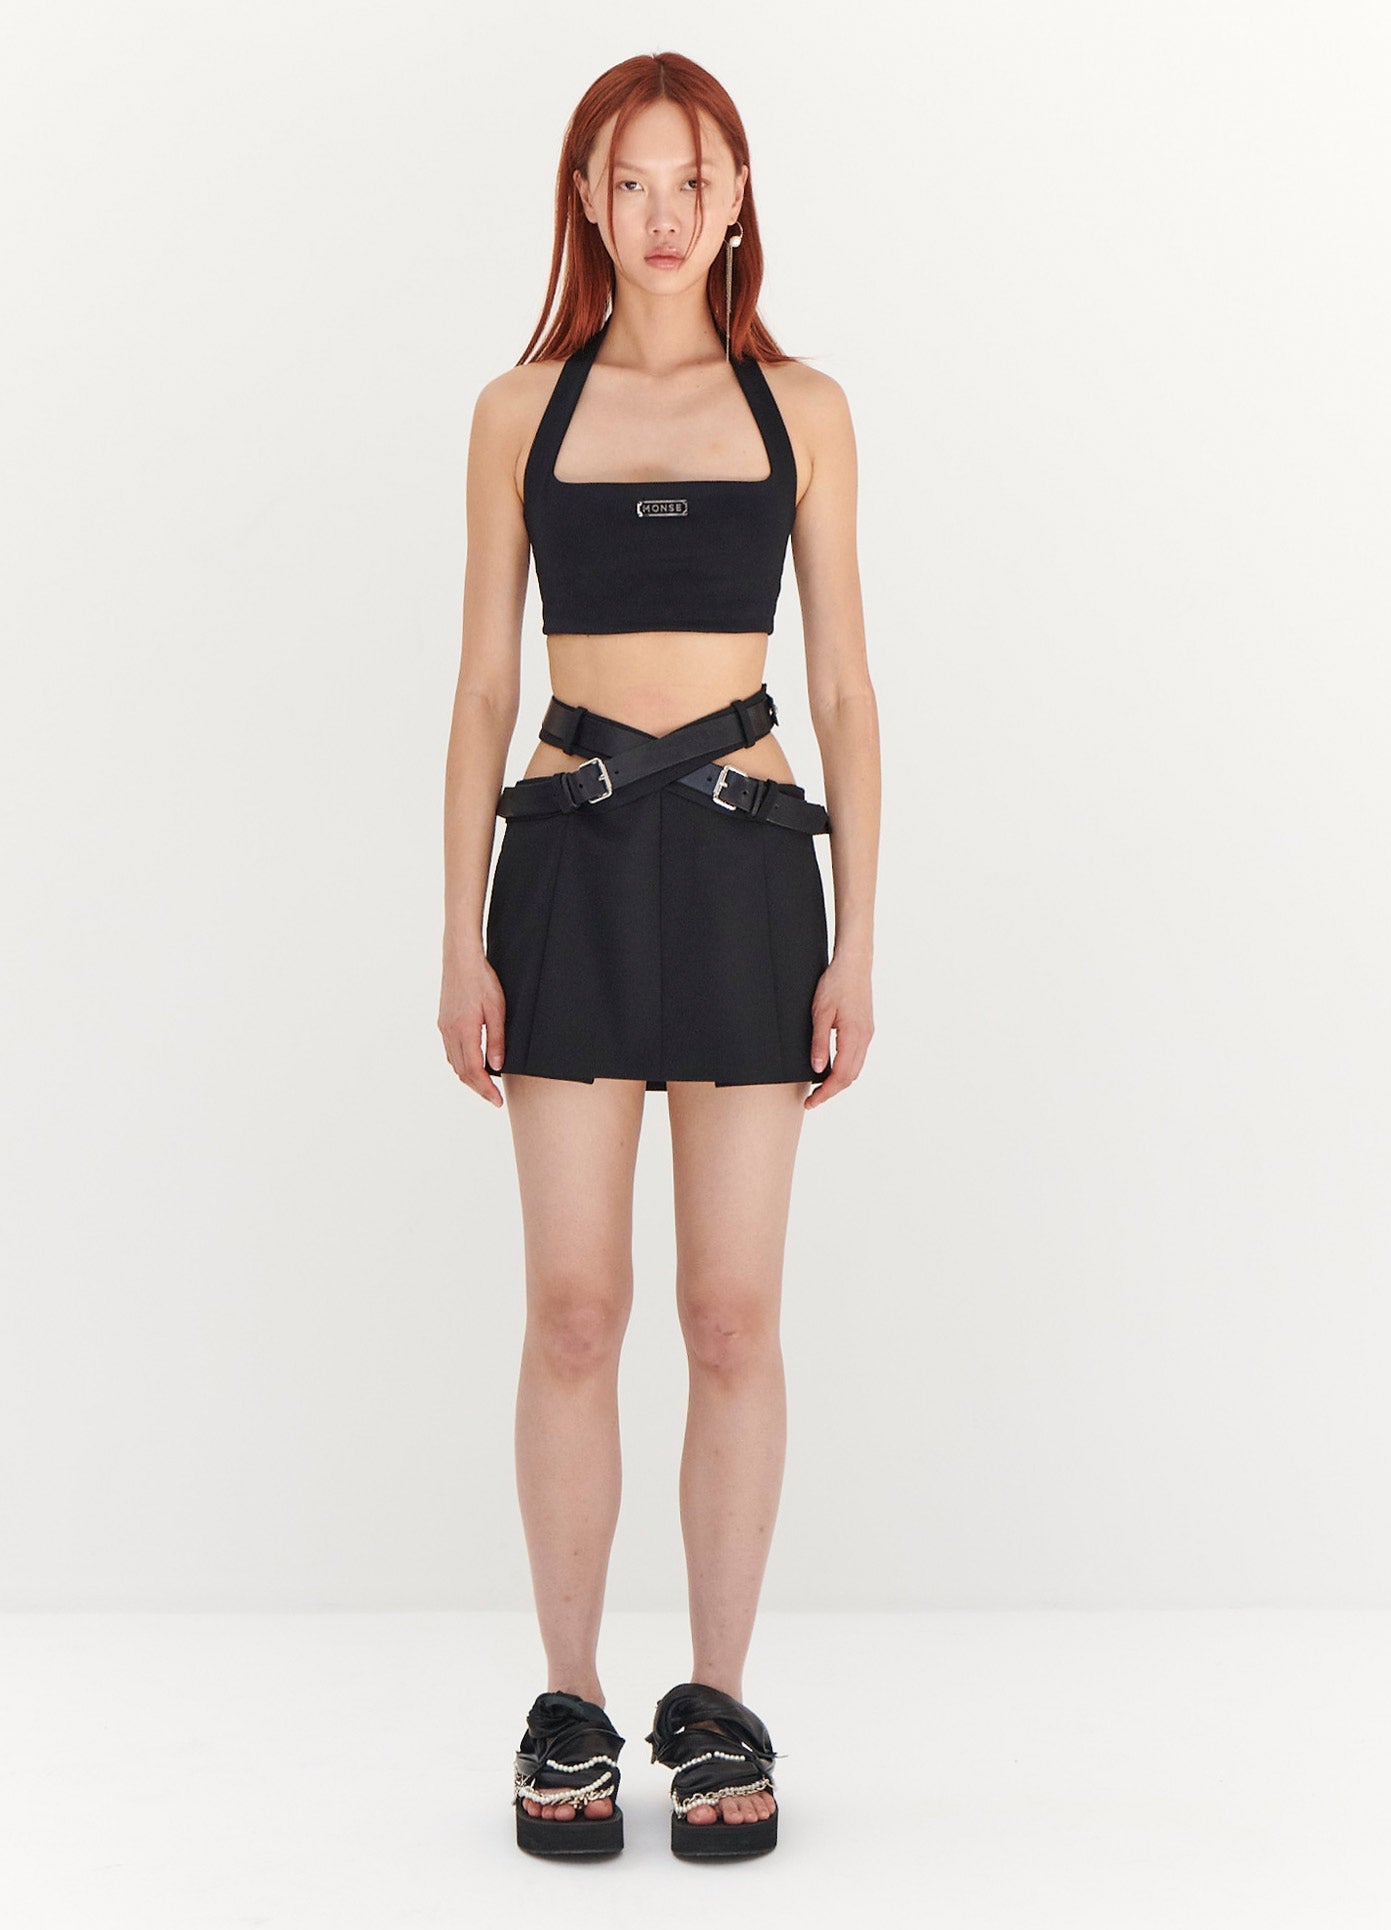 MONSE Criss Cross Waist Belted Mini Skirt in Black on Model Full Front View